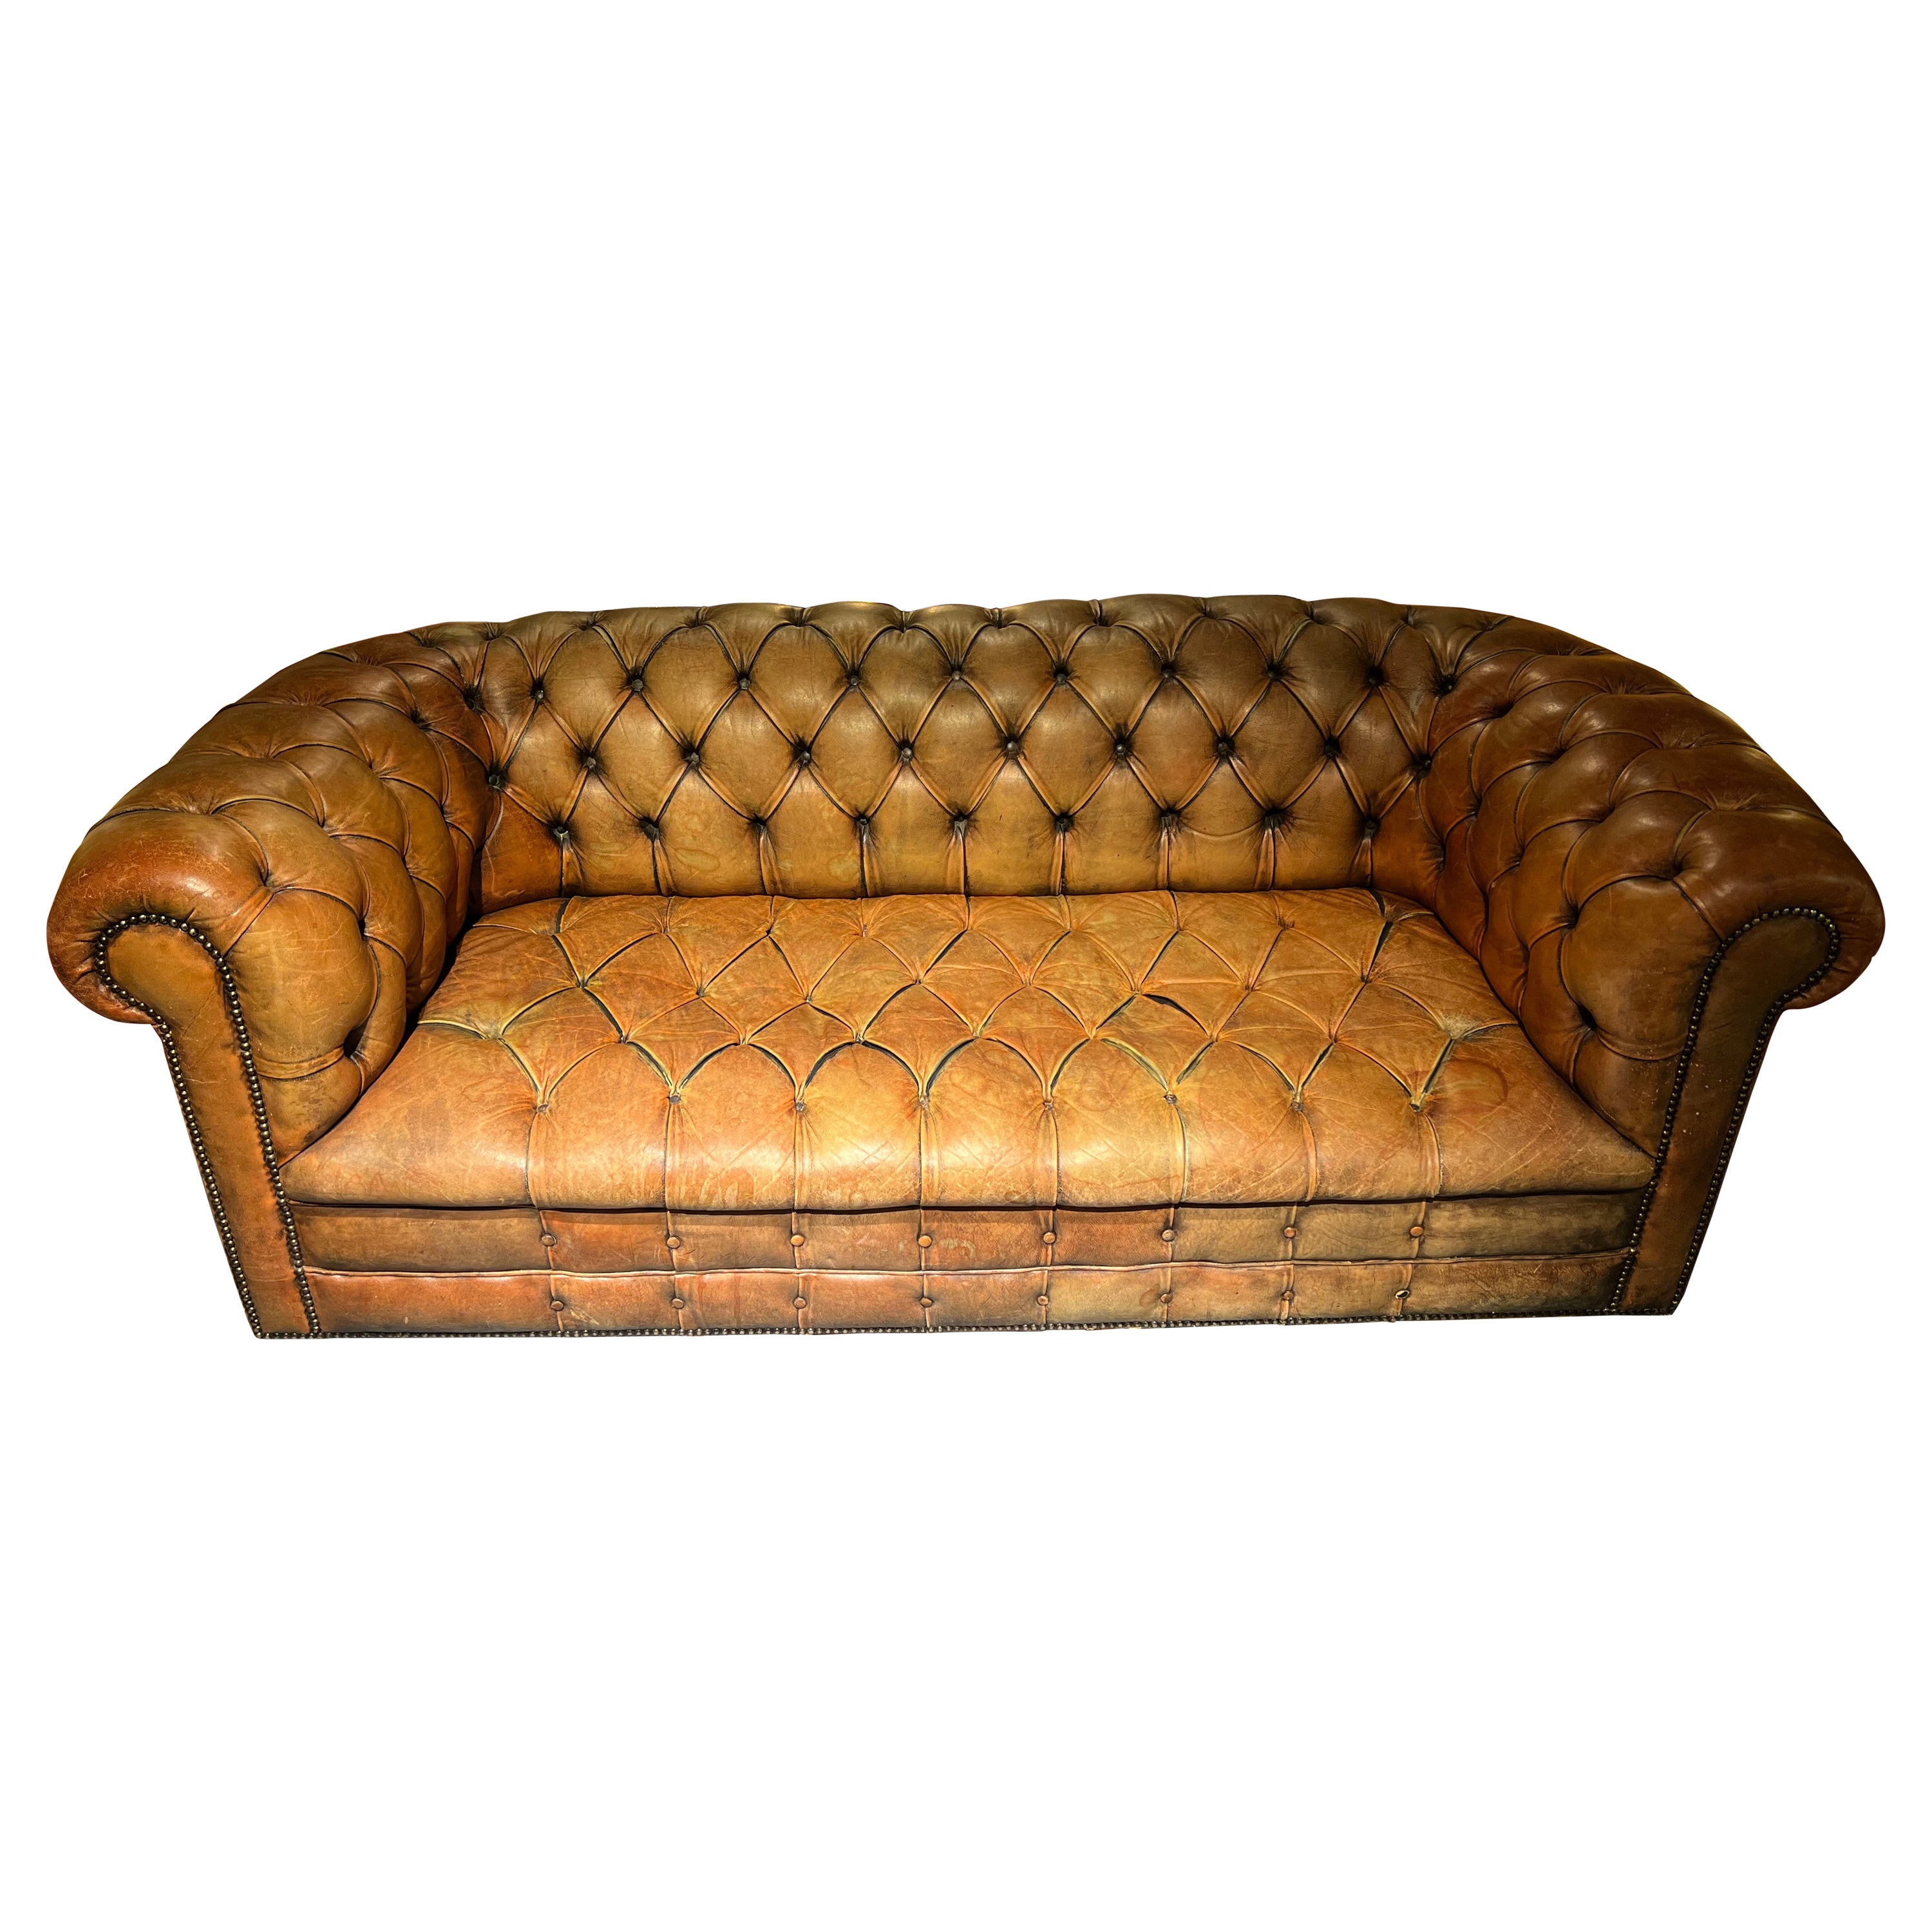 Original Vintage Chesterfield Sofa Faded Brown von etwa 1978 Hohe Qualität